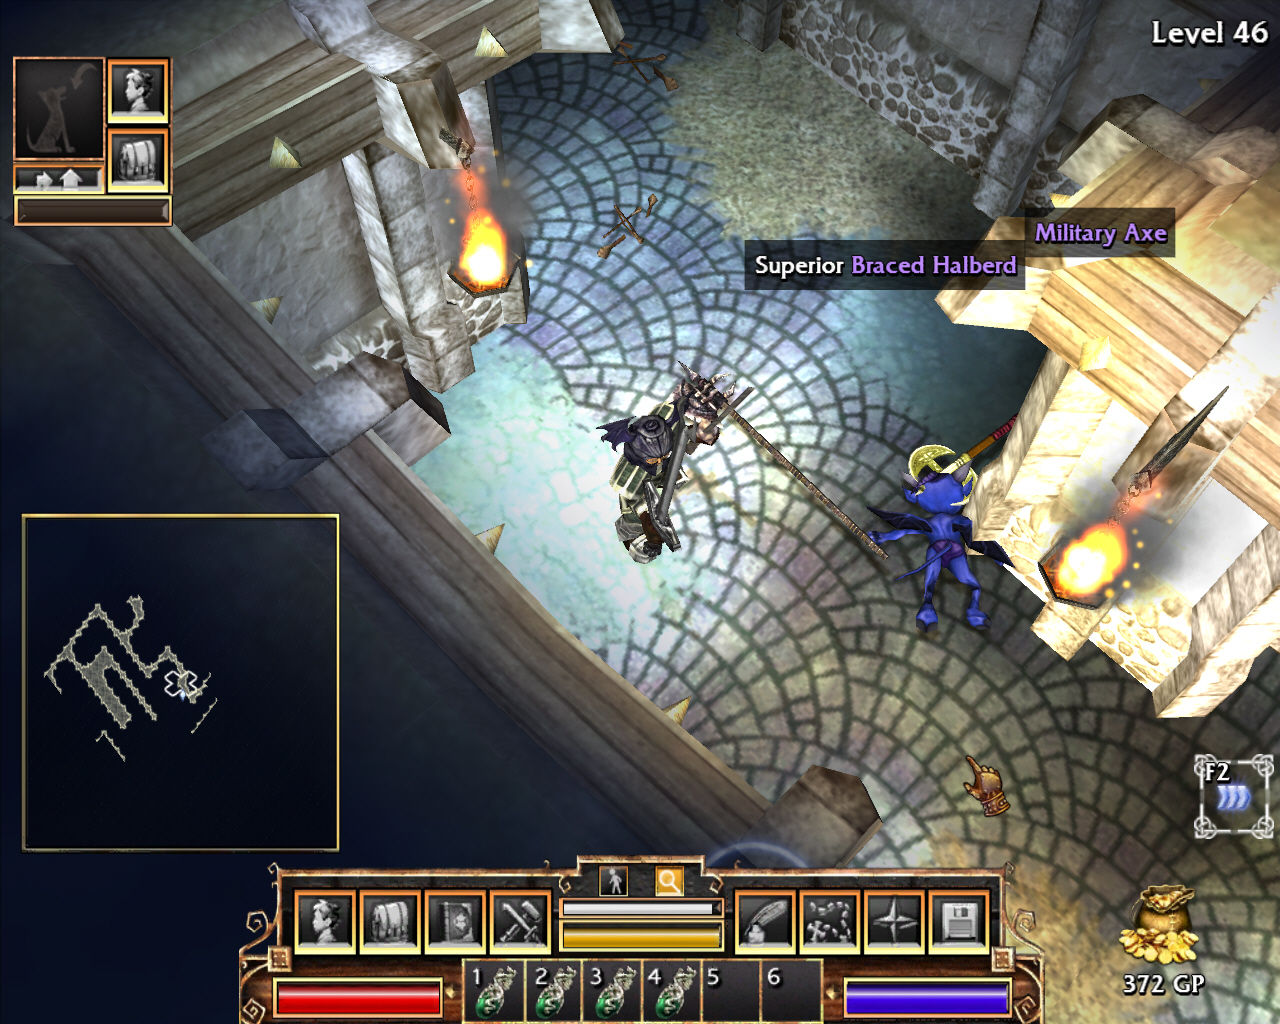 Torchlight screenshots - MobyGames